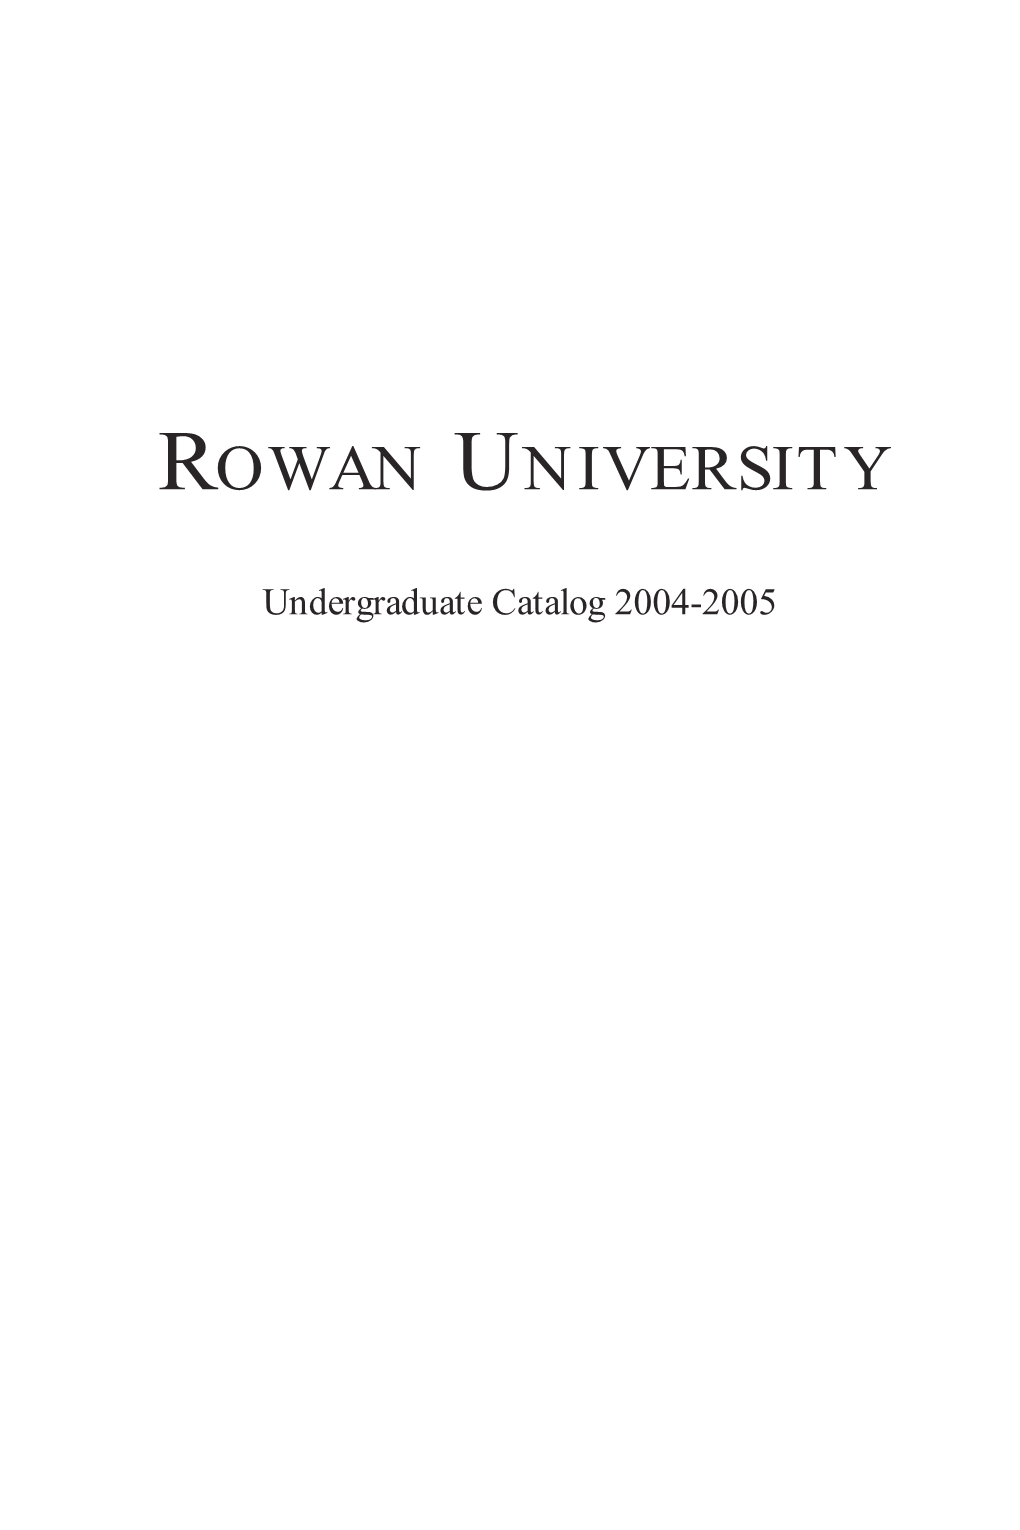 2004-2005 Undergraduate Catalog